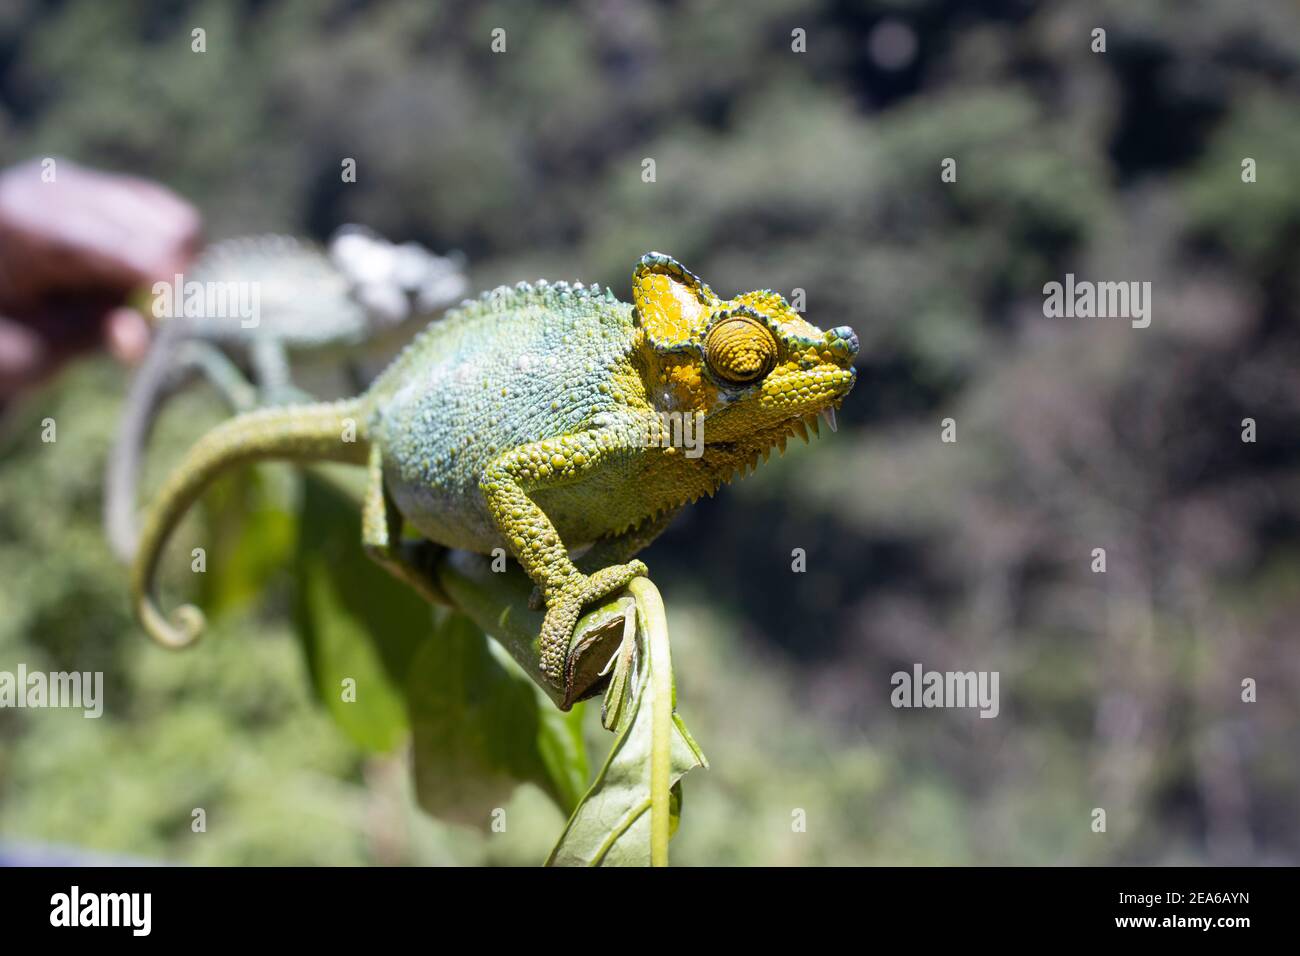 Un dragón empanado verde y amarillo balanceándose en un palo. Foto de stock